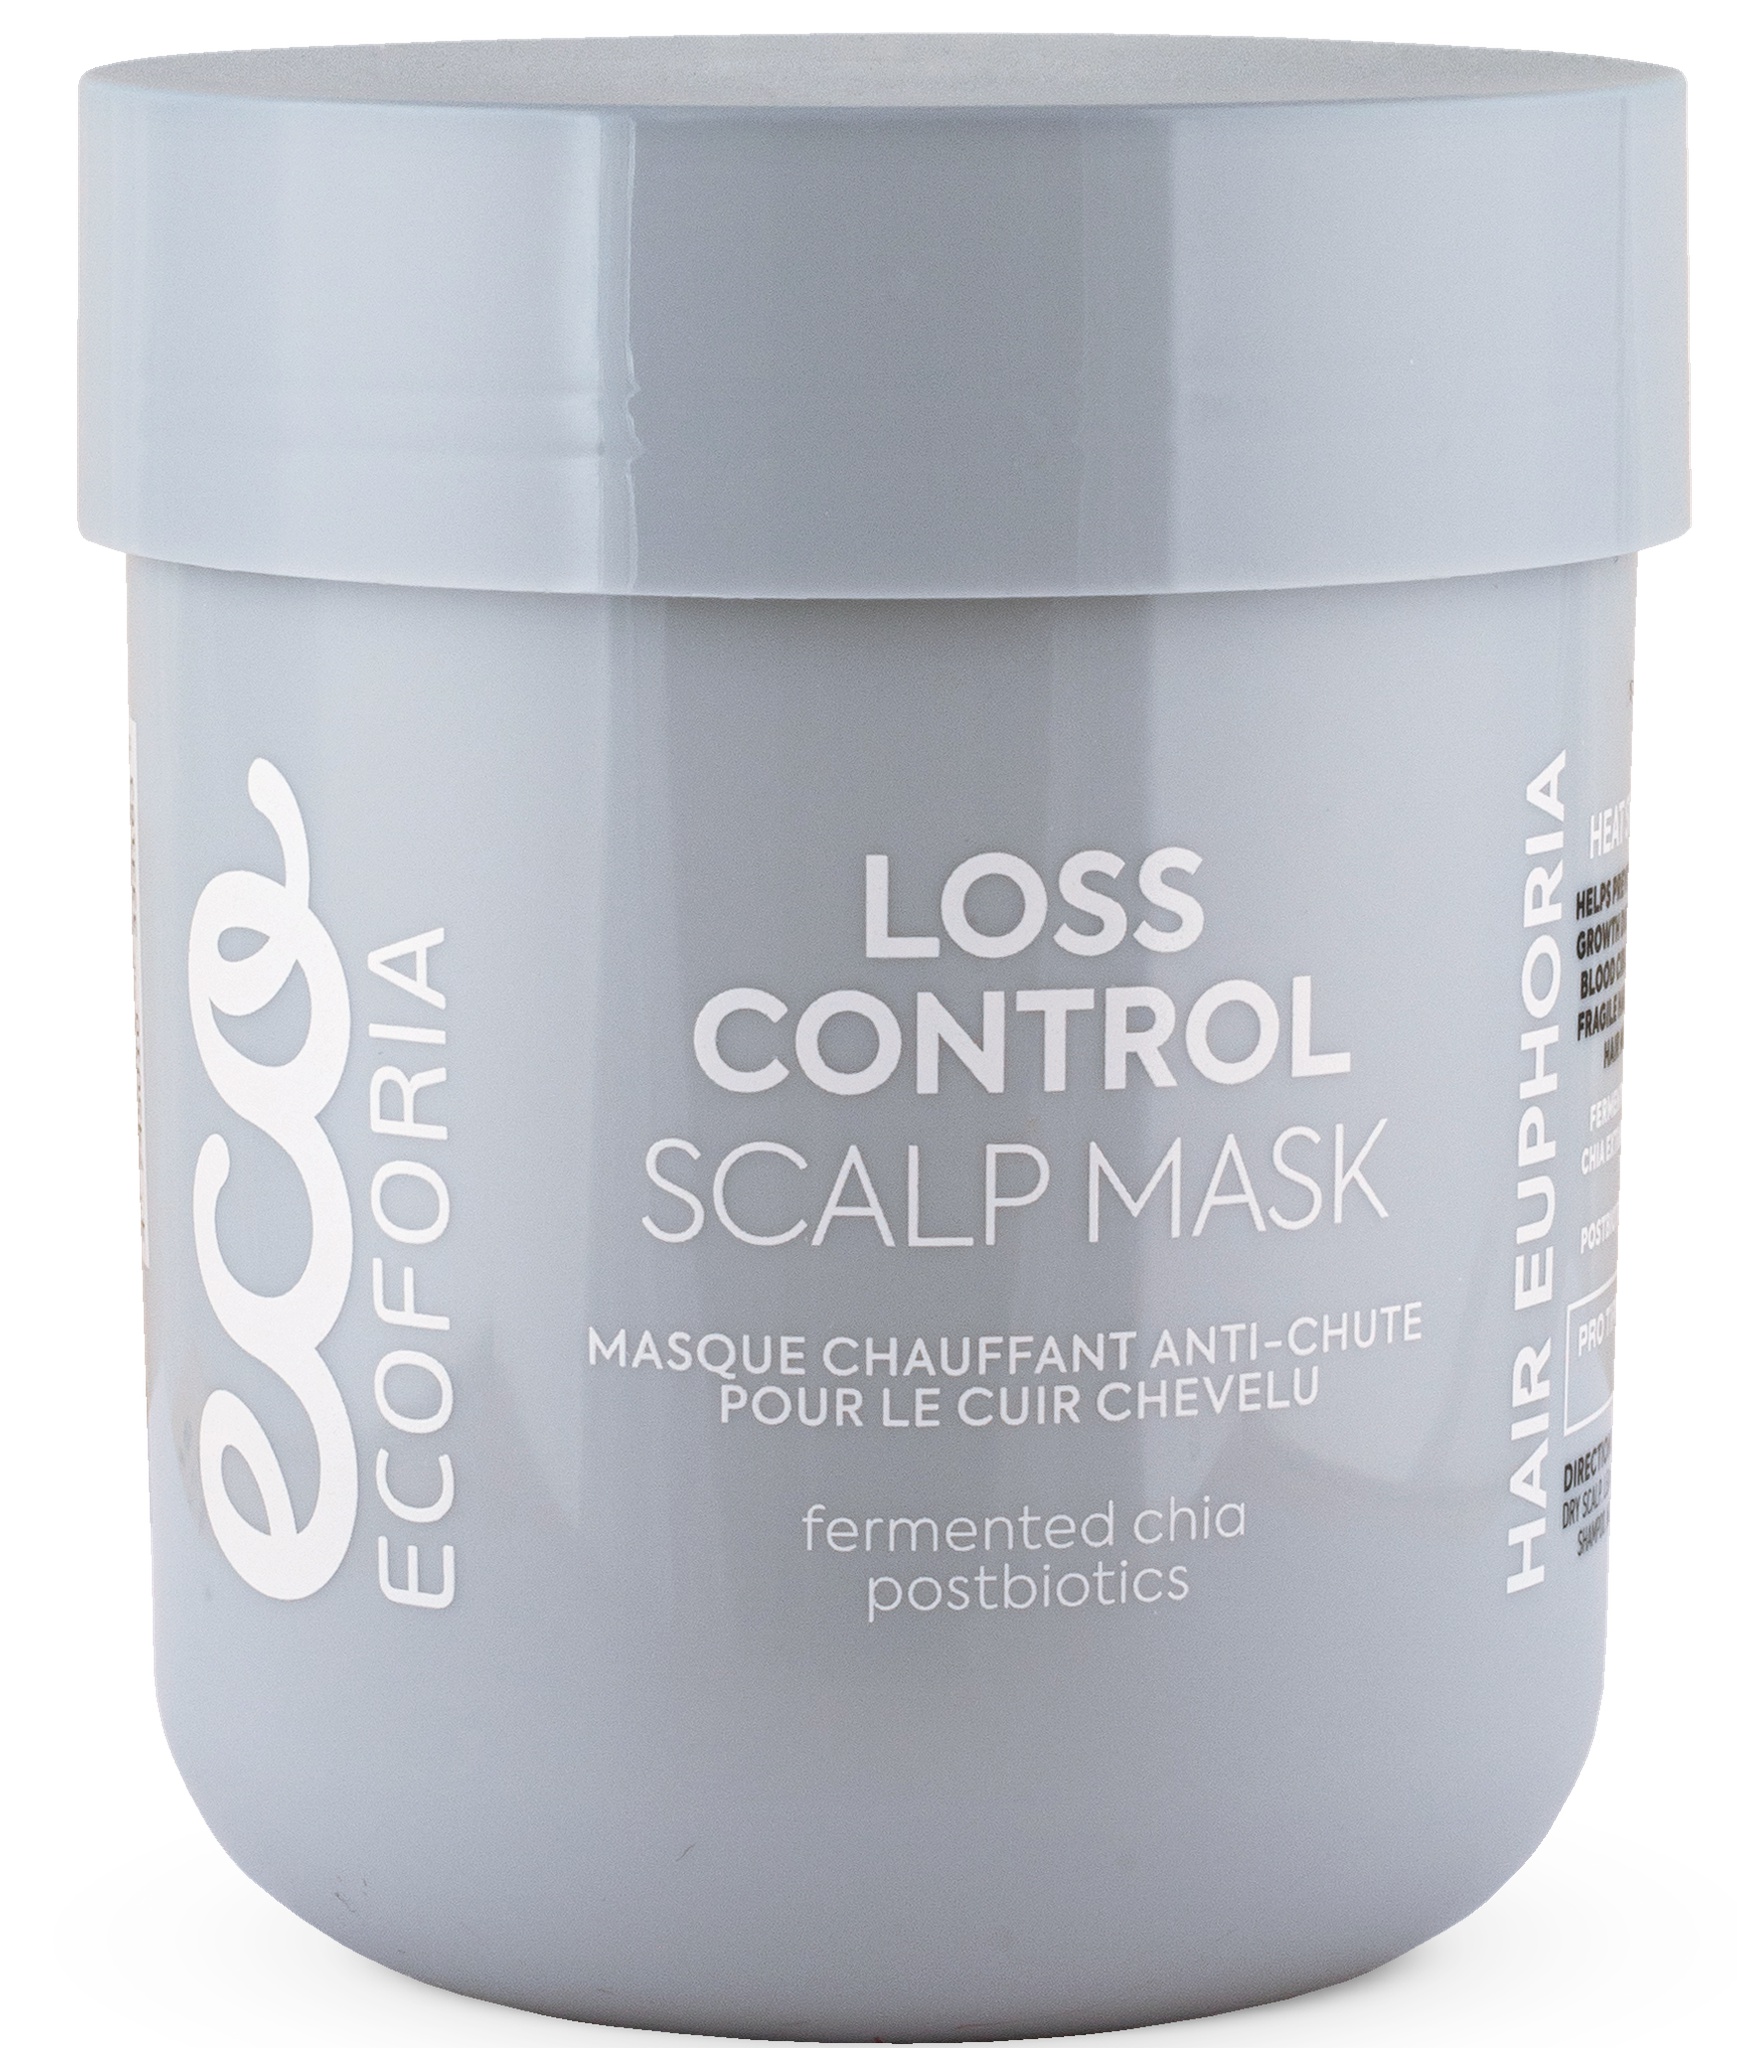 Ecoforia Loss Control Scalp Mask